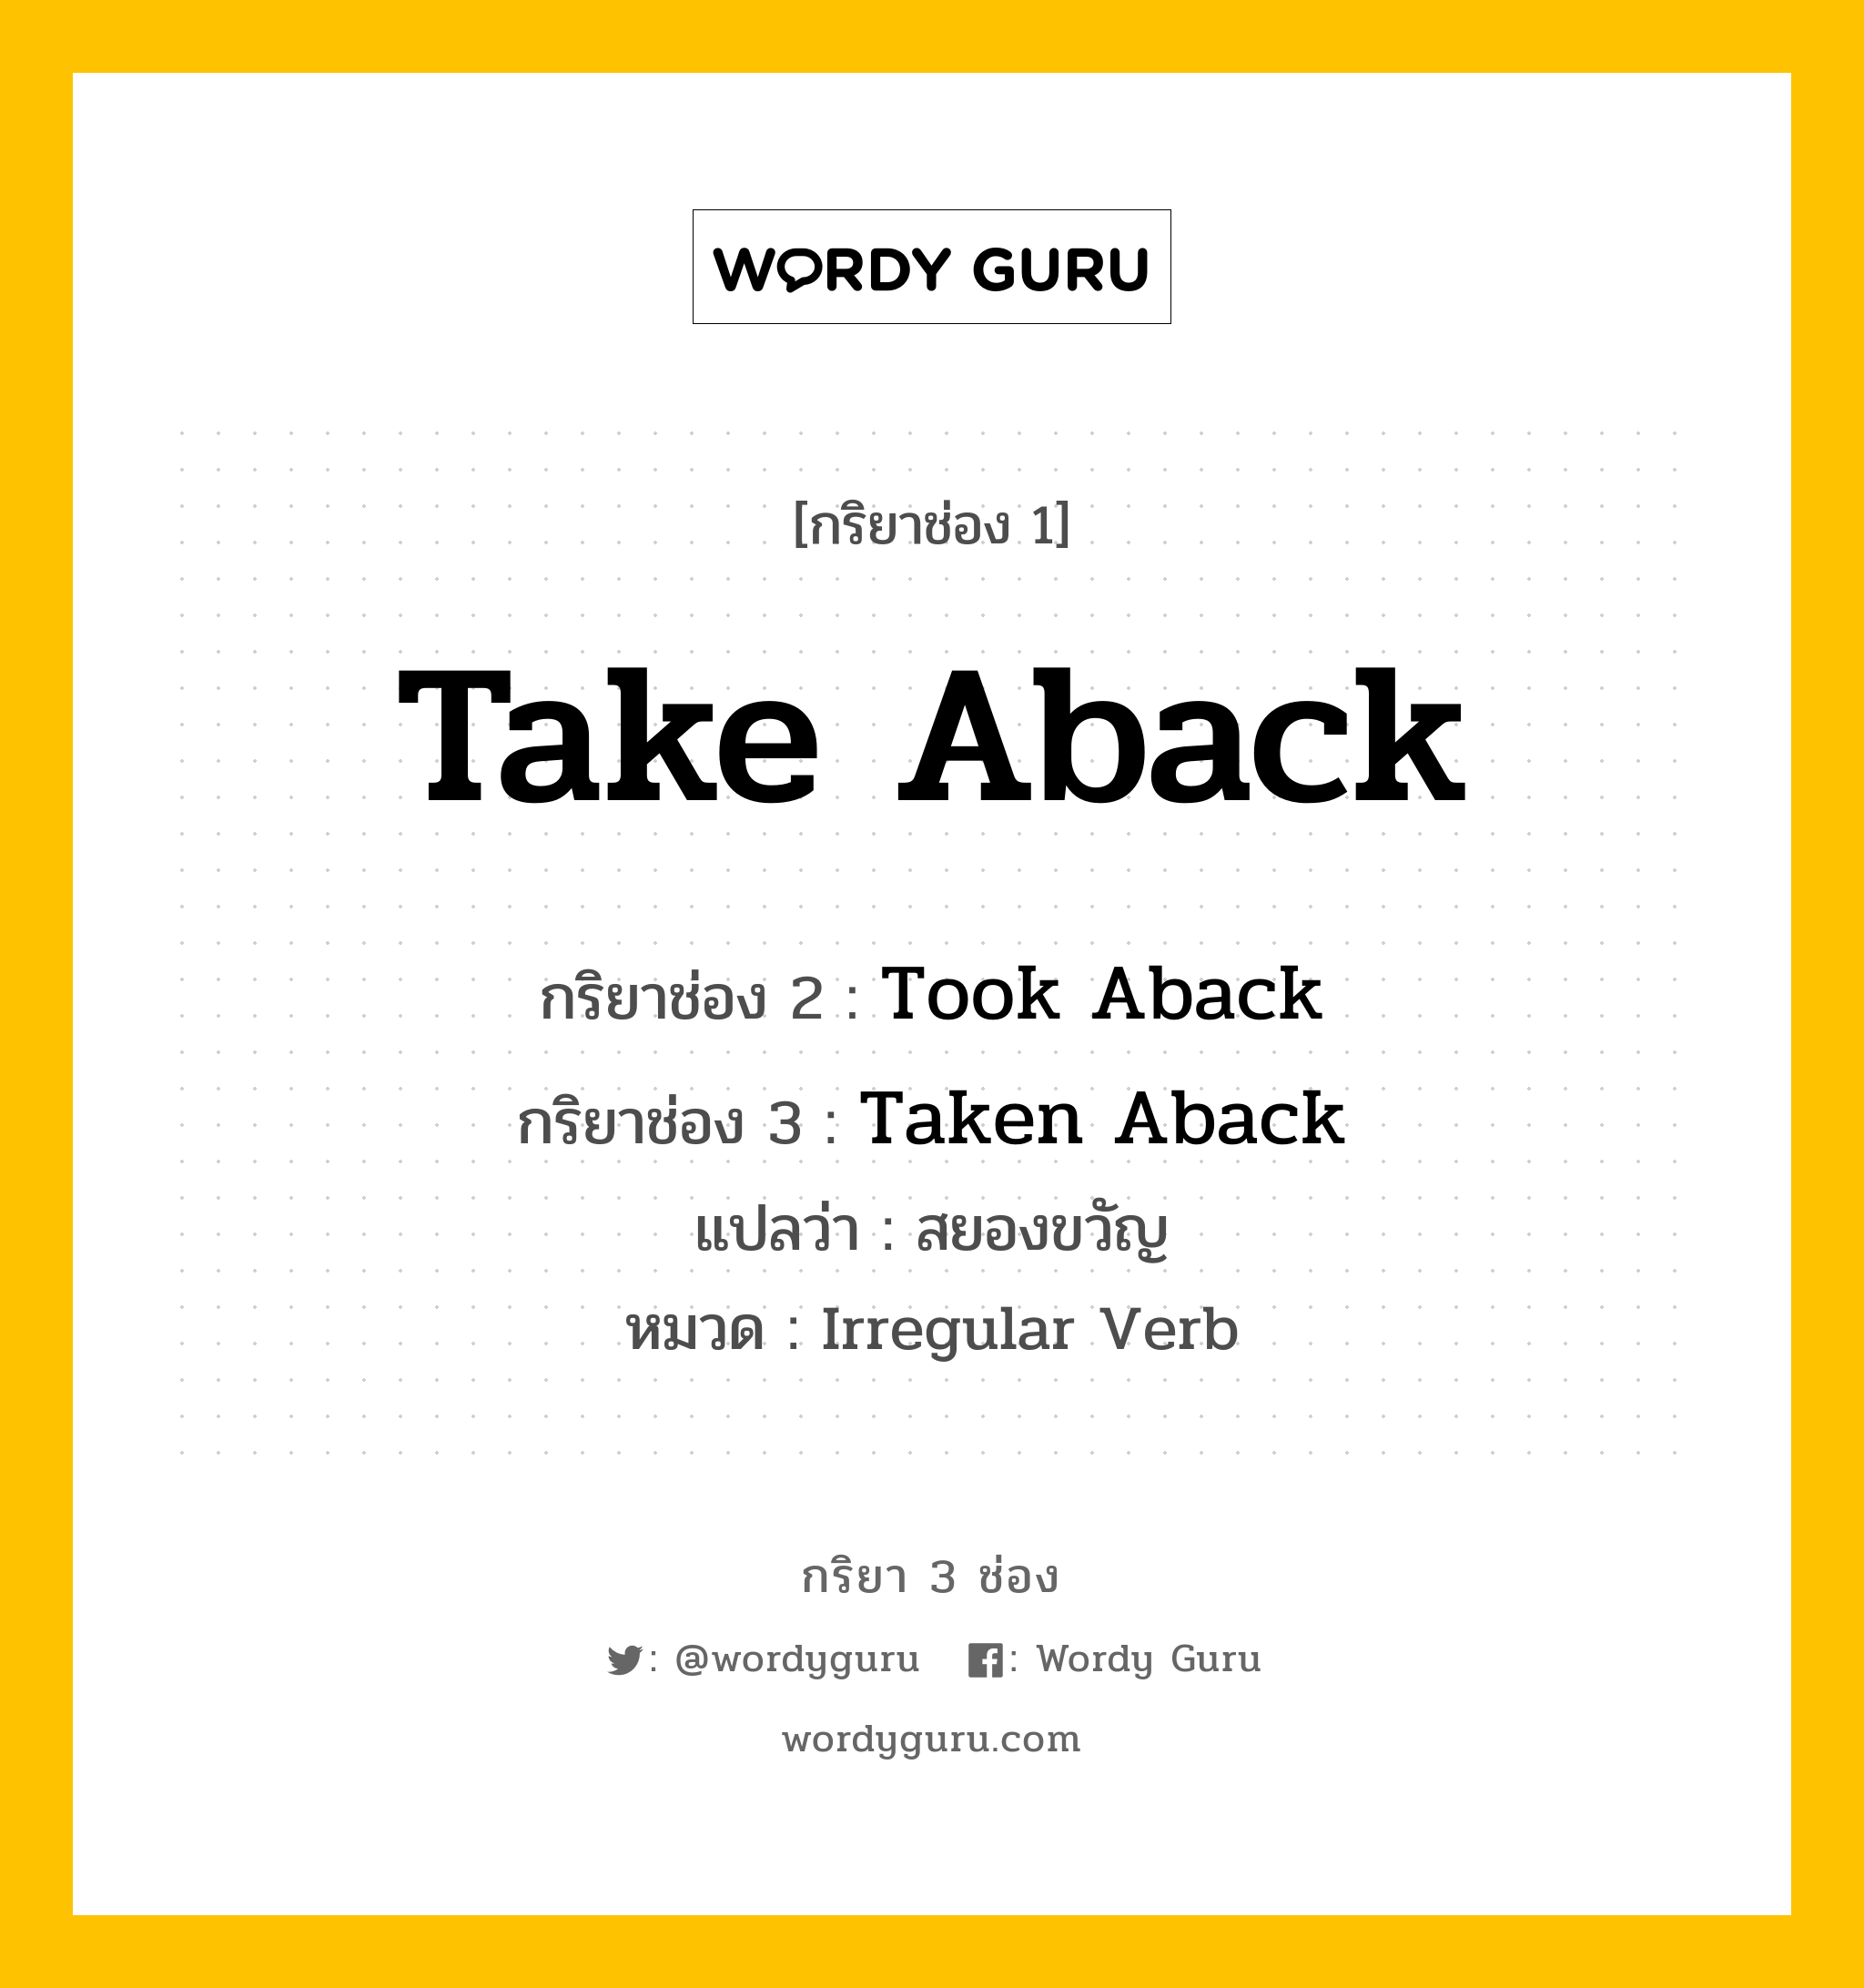 กริยา 3 ช่อง: Take Aback ช่อง 2 Take Aback ช่อง 3 คืออะไร, กริยาช่อง 1 Take Aback กริยาช่อง 2 Took Aback กริยาช่อง 3 Taken Aback แปลว่า สยองขวัญ หมวด Irregular Verb หมวด Irregular Verb